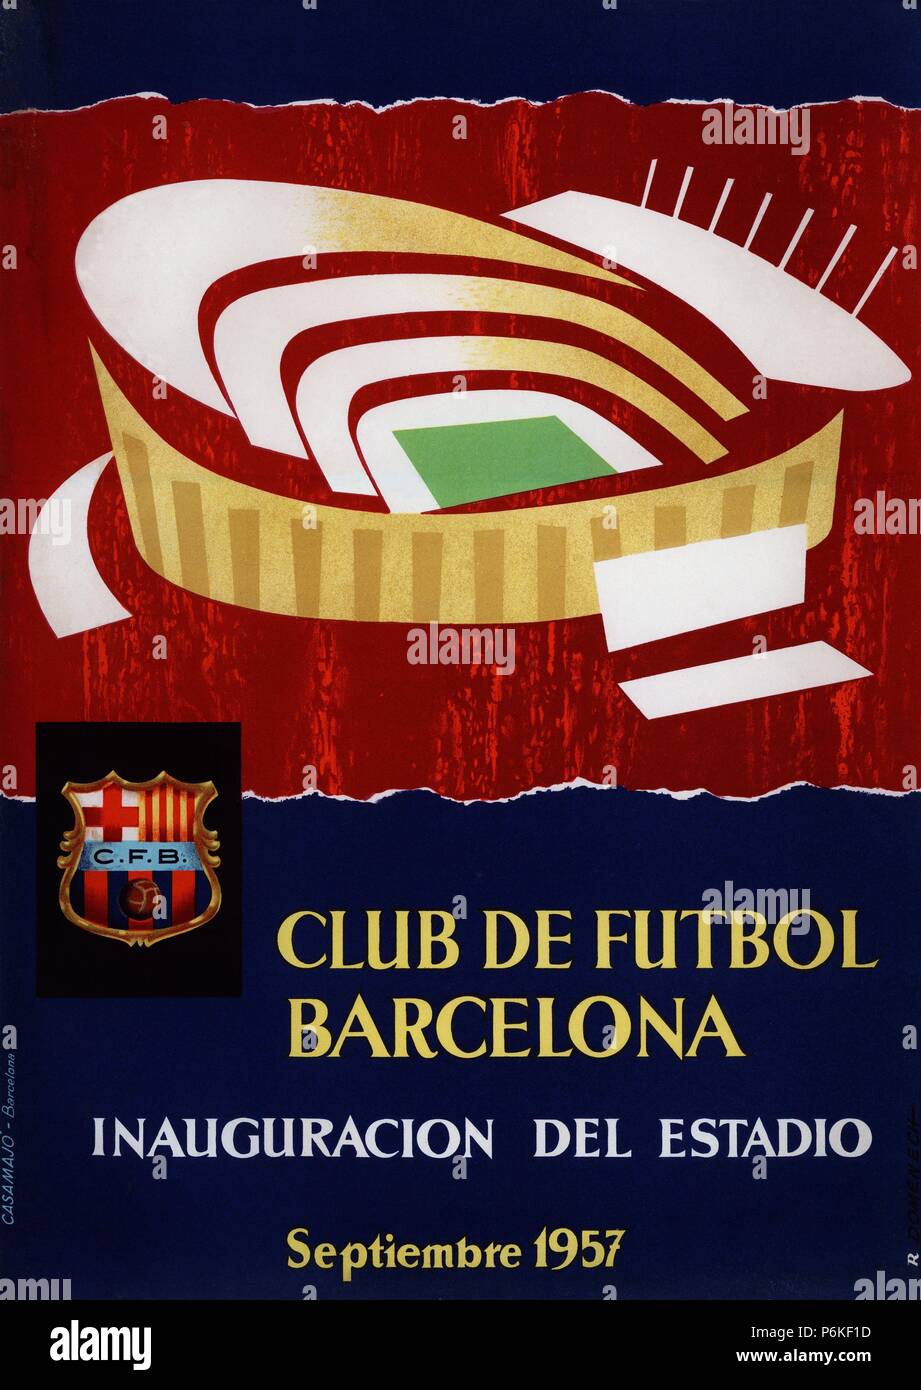 Cartel conmemorativo de la inauguración del estadio del Club de Fútbol Barcelona, 'Nou Camp', el 24 de septiembre de 1957. Stock Photo